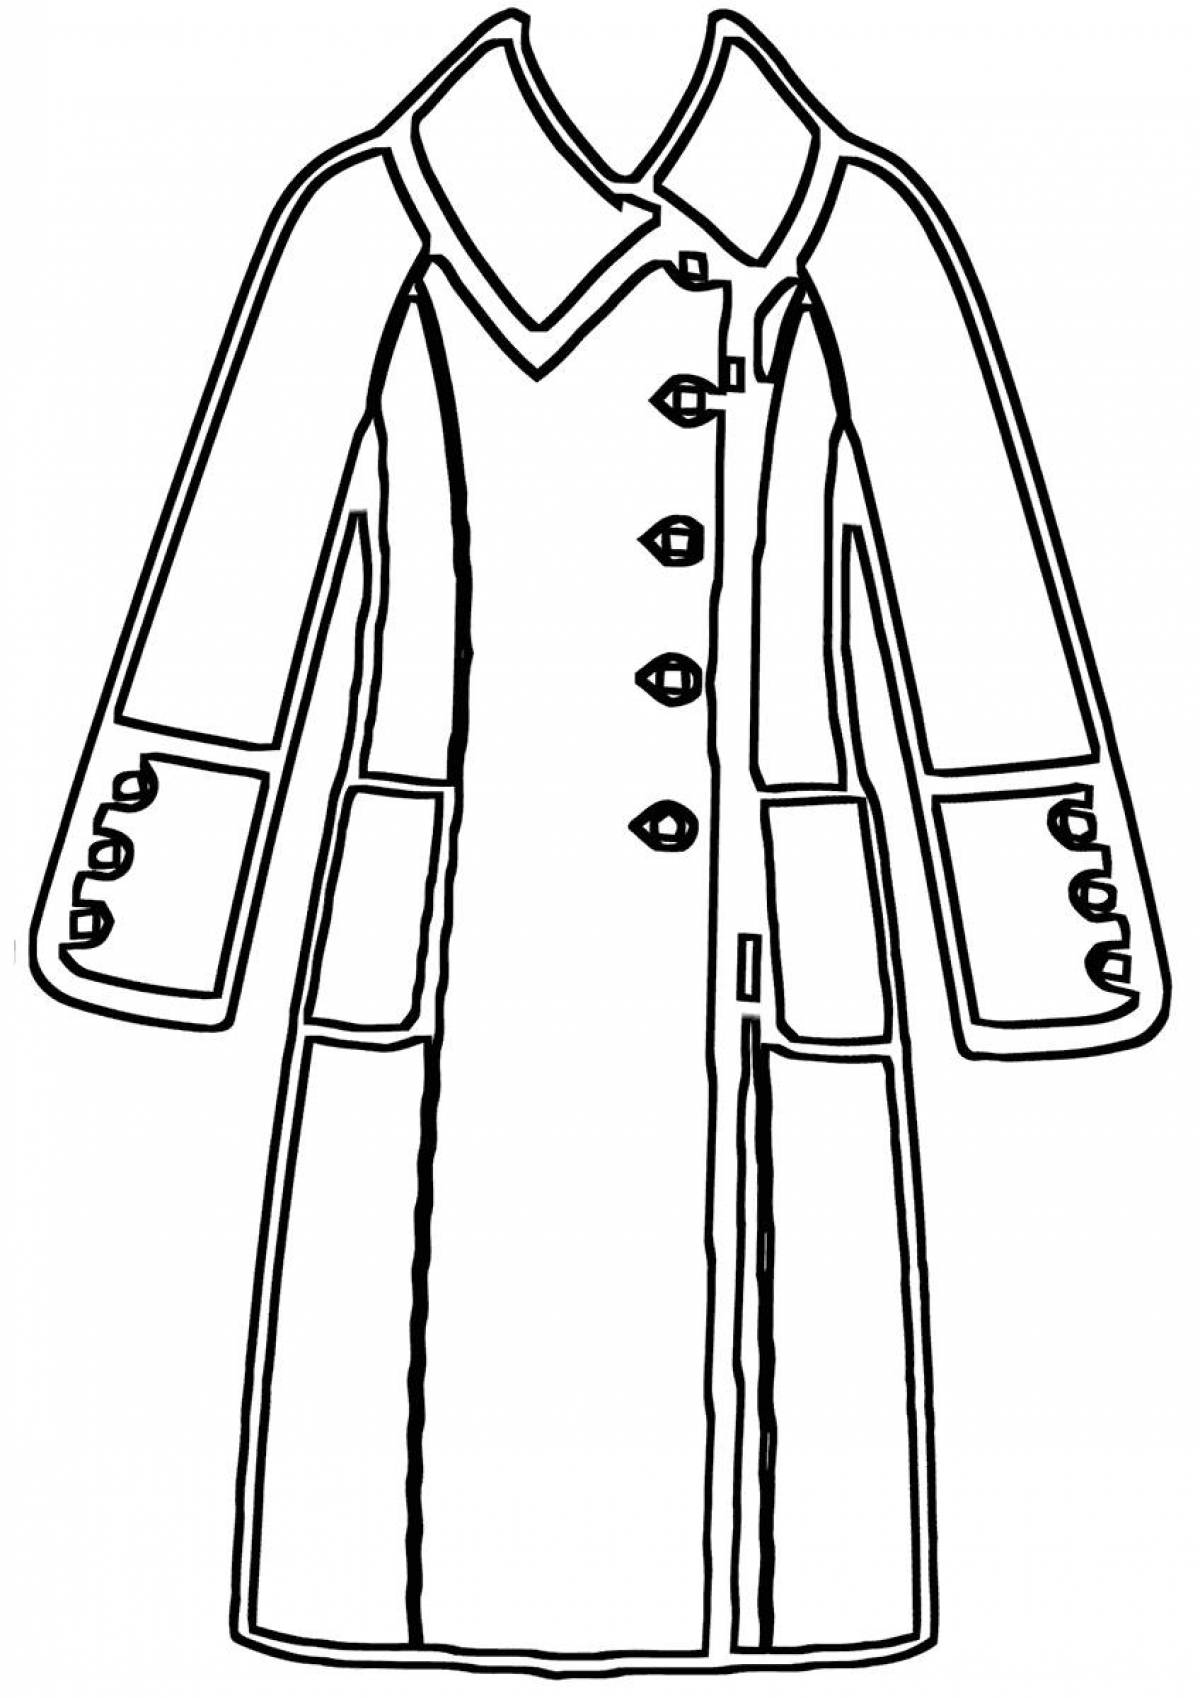 Collared coat